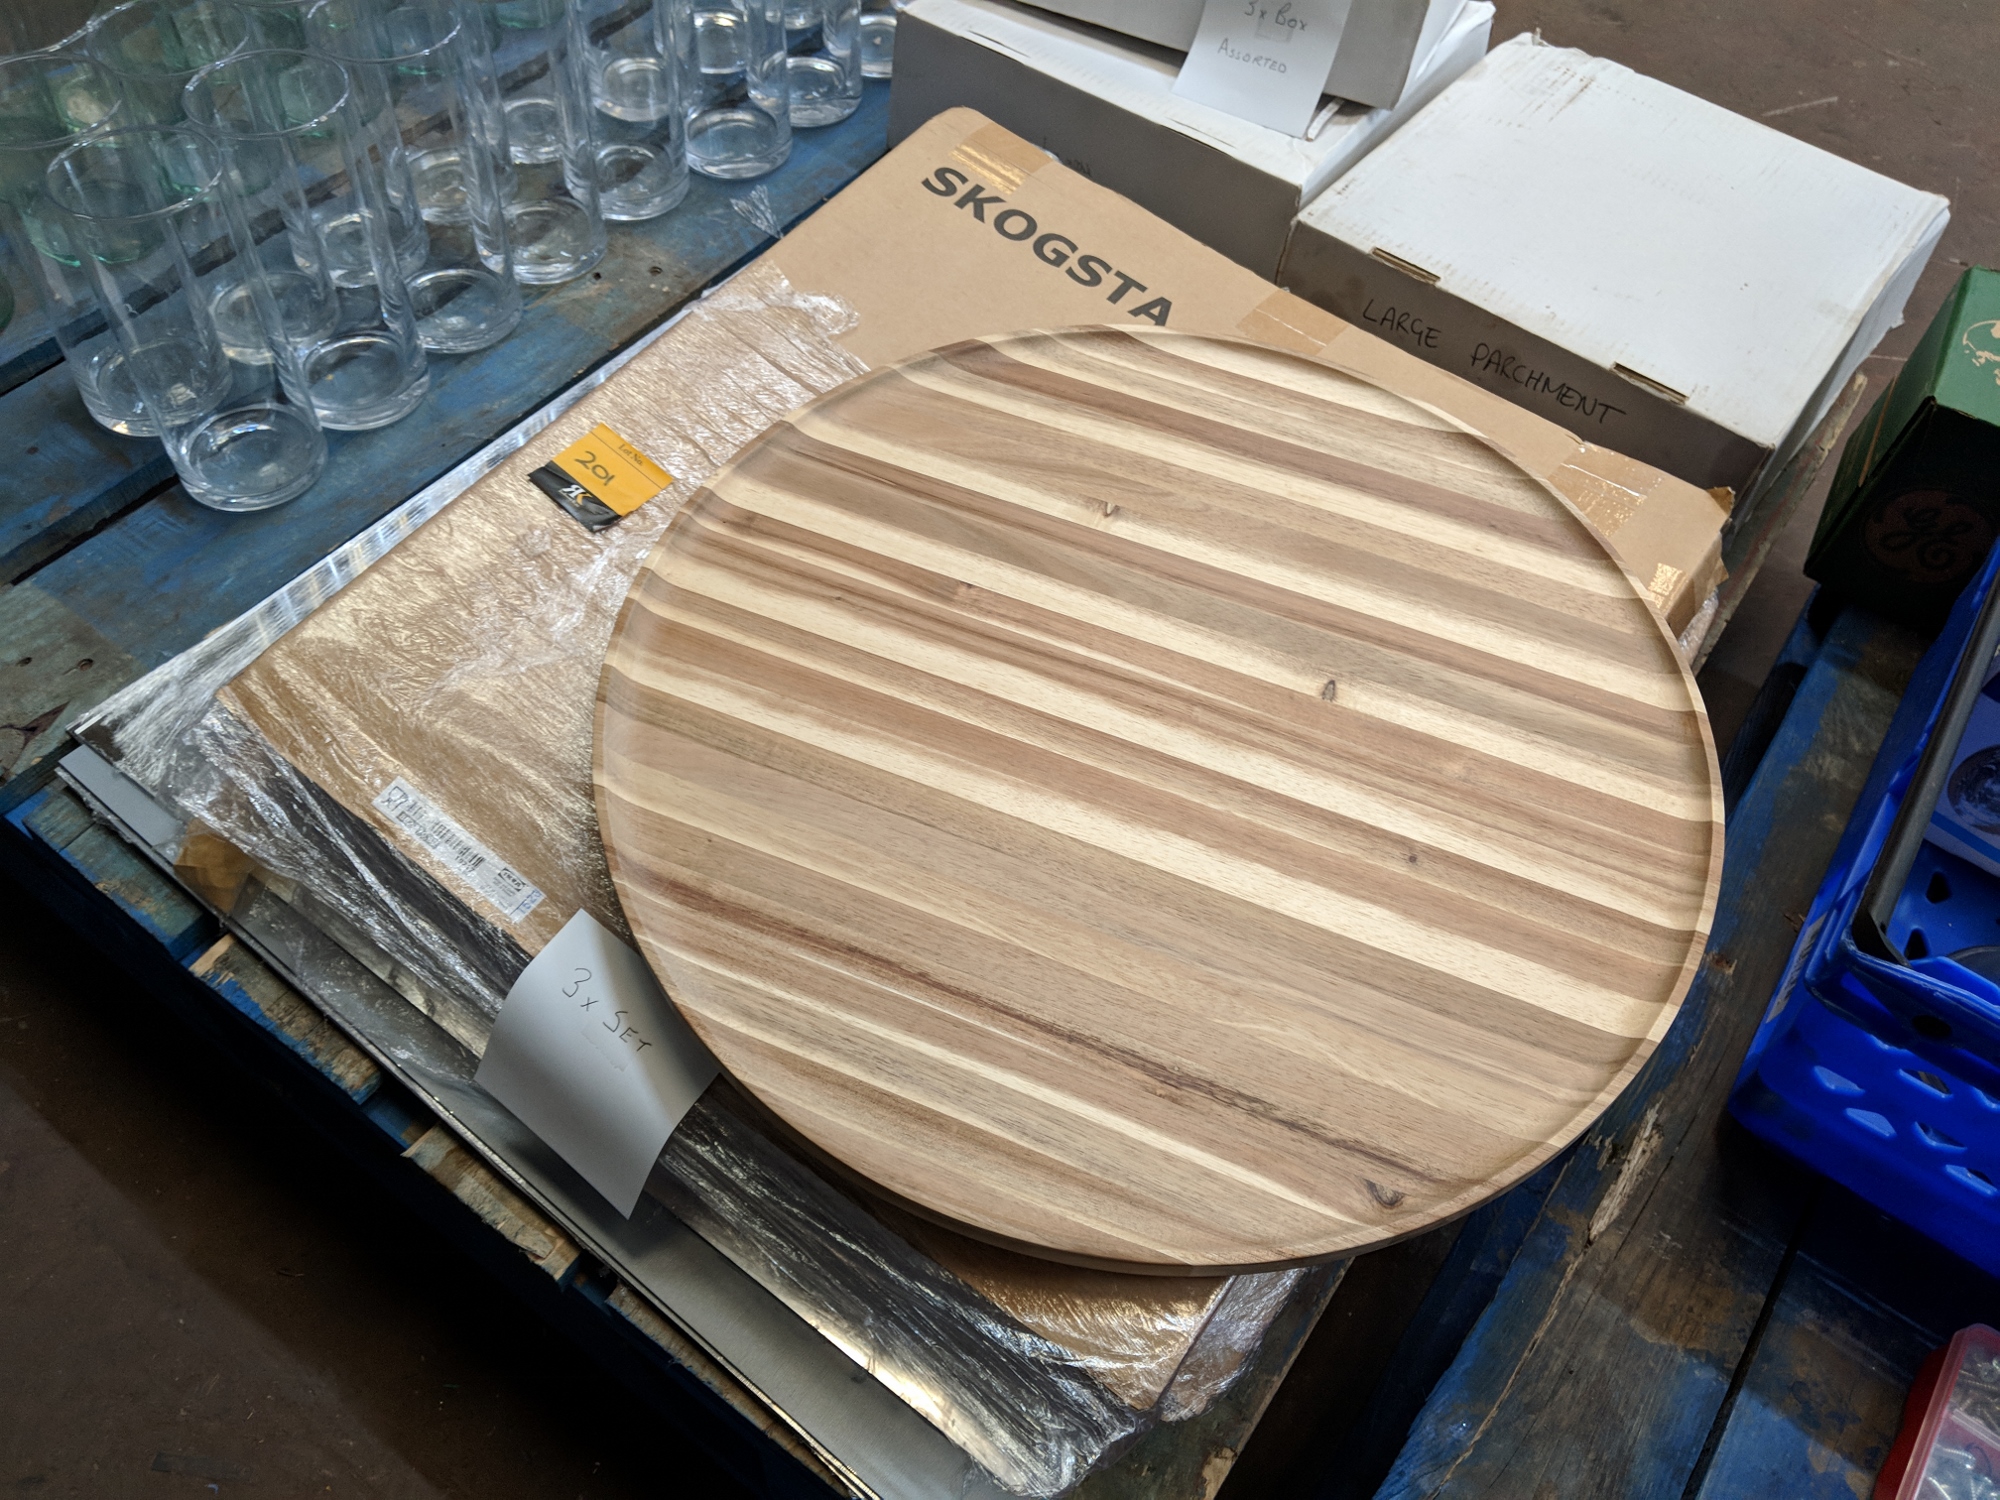 3 off Ikea Skogsta large round wooden serving trays plus 4 